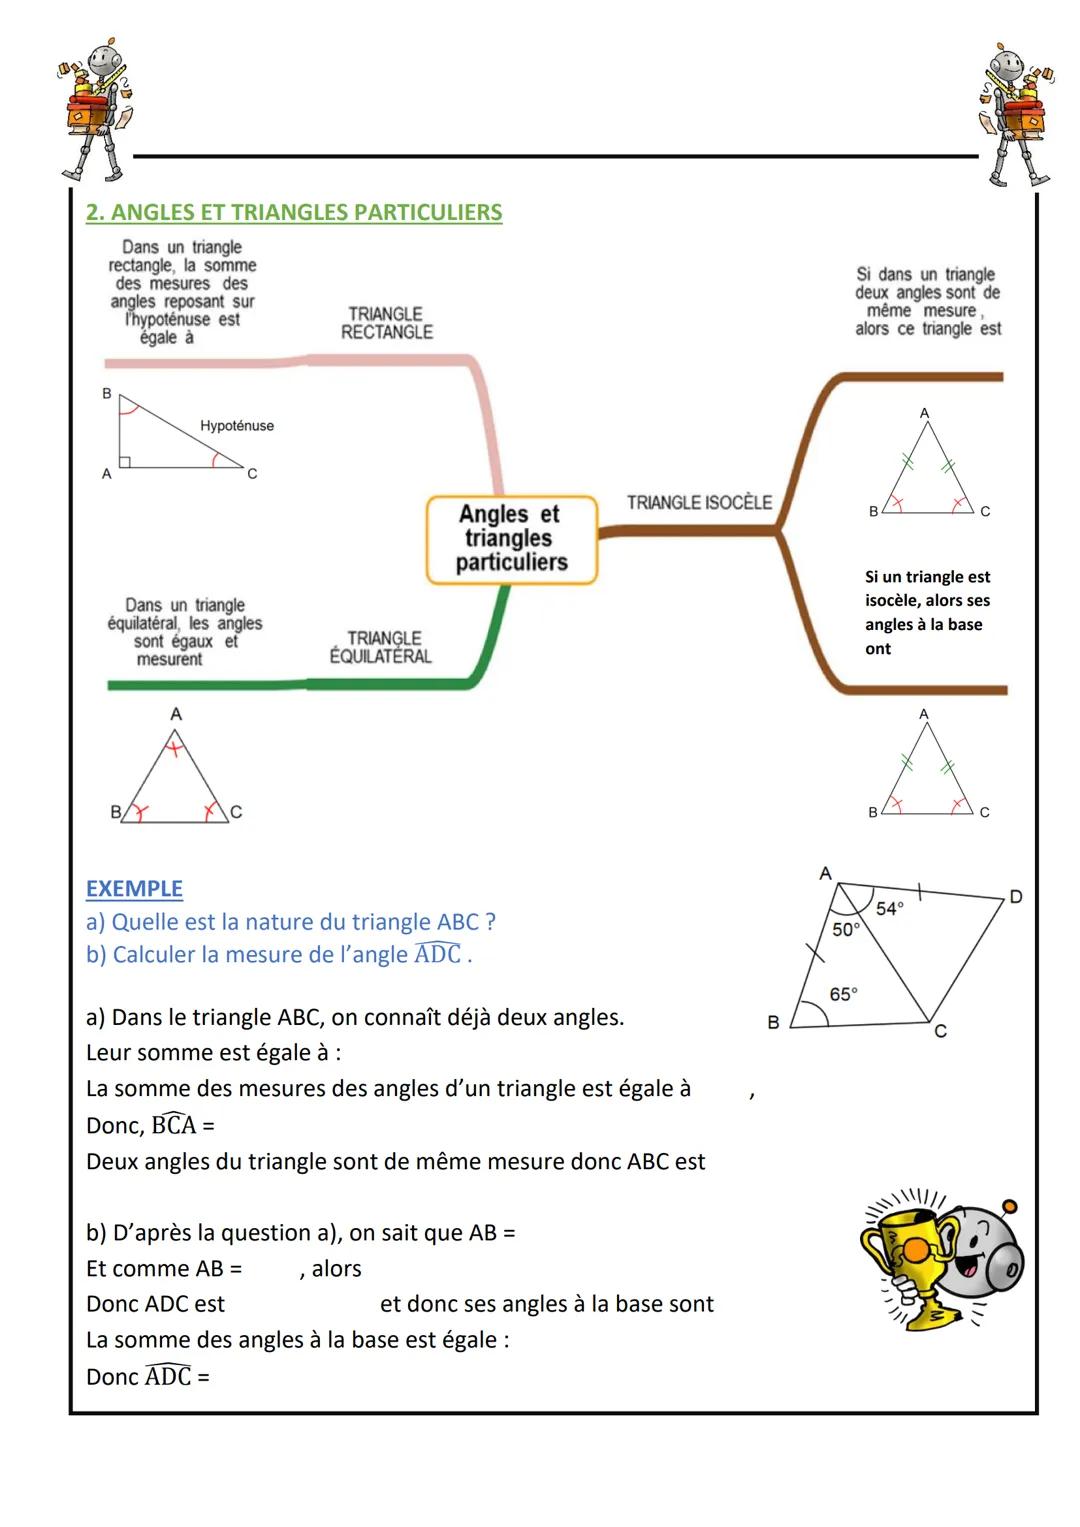 
<p>Détermination si un triangle est constructible en utilisant l'inégalité triangulaire</p>
<p>Dans un triangle, la longueur de chaque côté